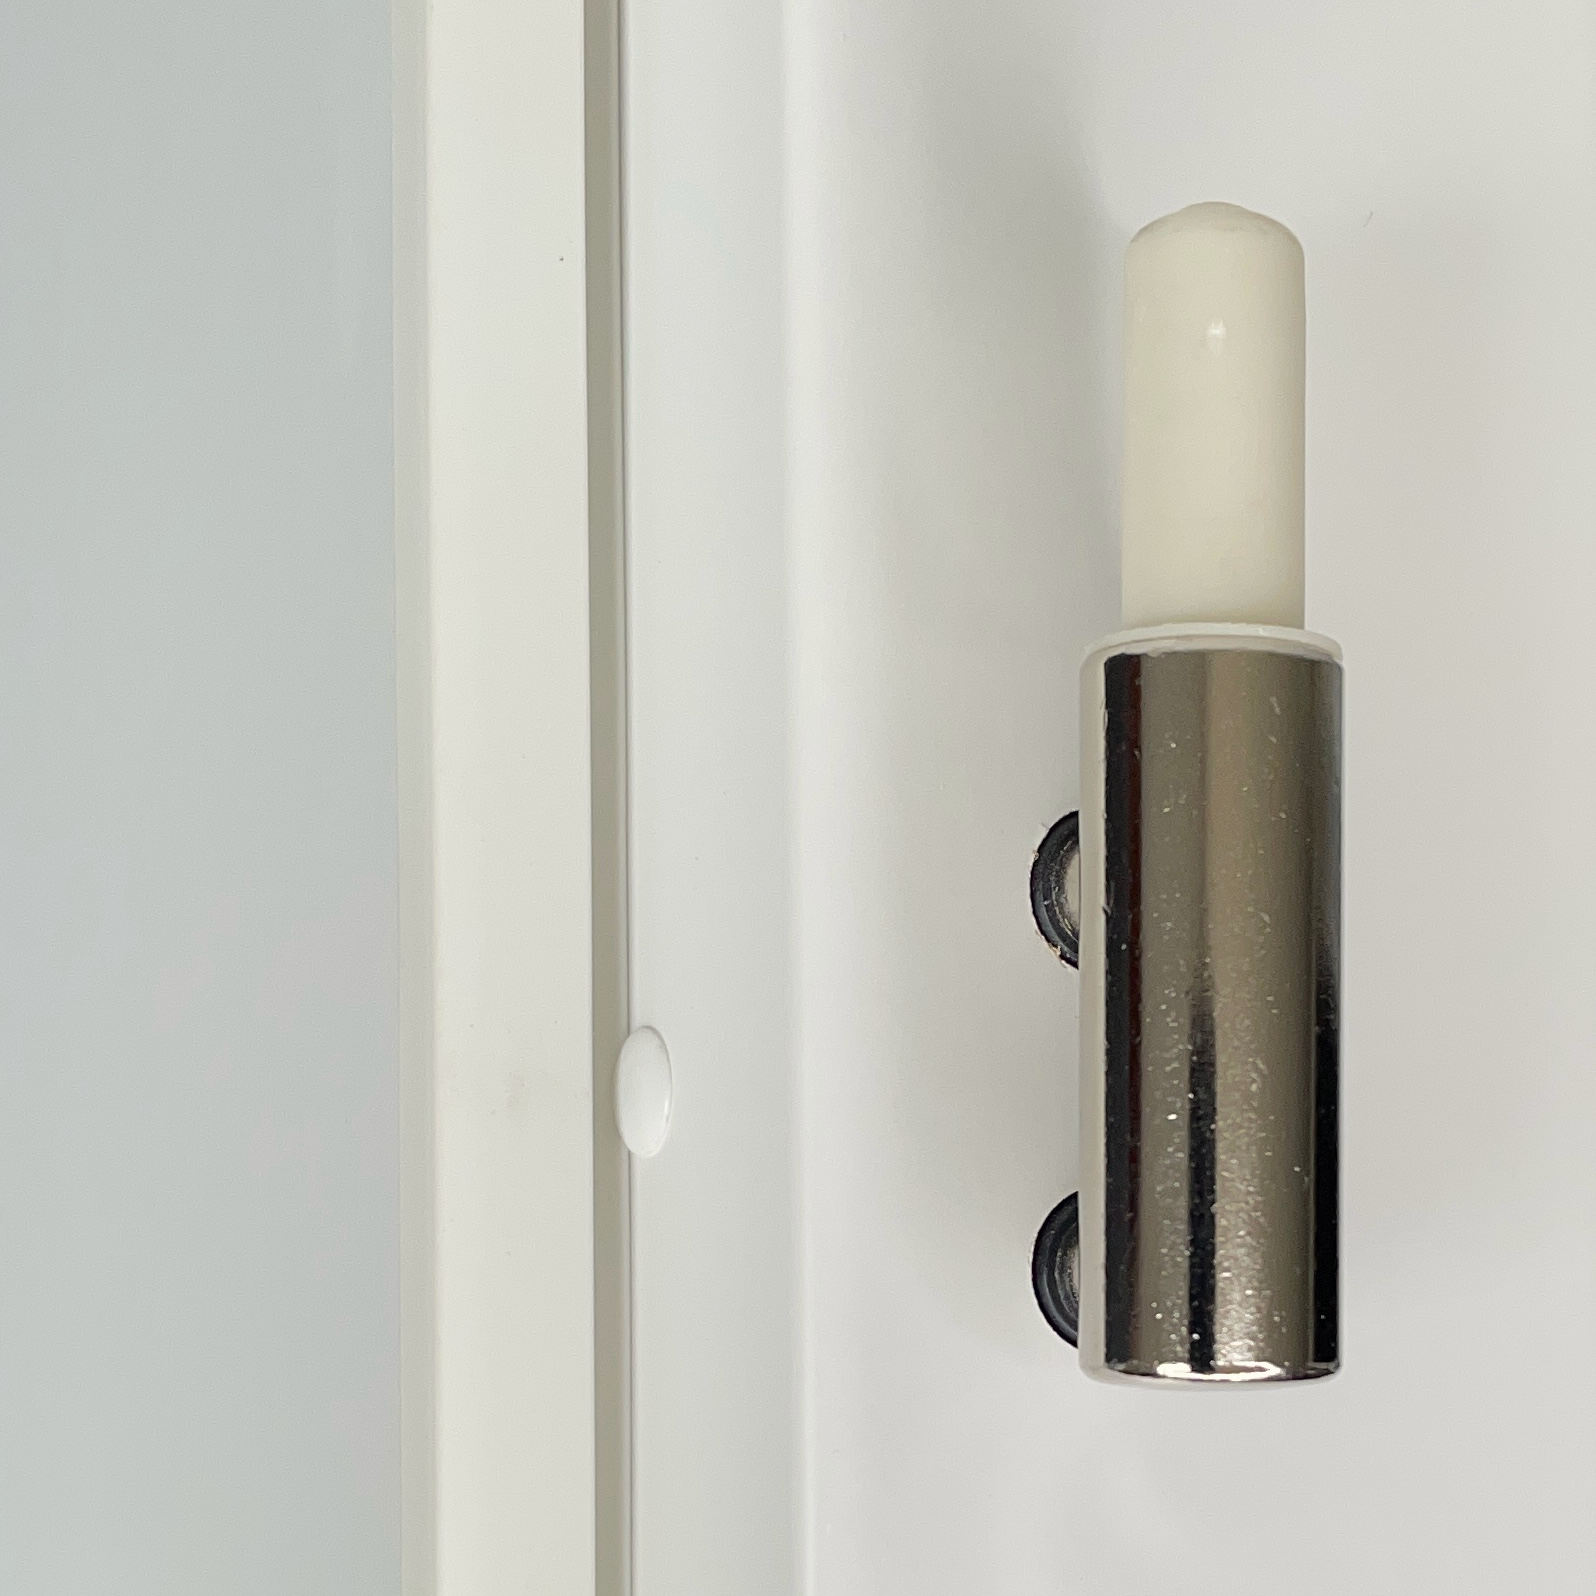 Zimmertür mit Zarge und Lichtausschnittsoft-weiß 2 Rillen Eckkante - Modell Designtür Q21LAS